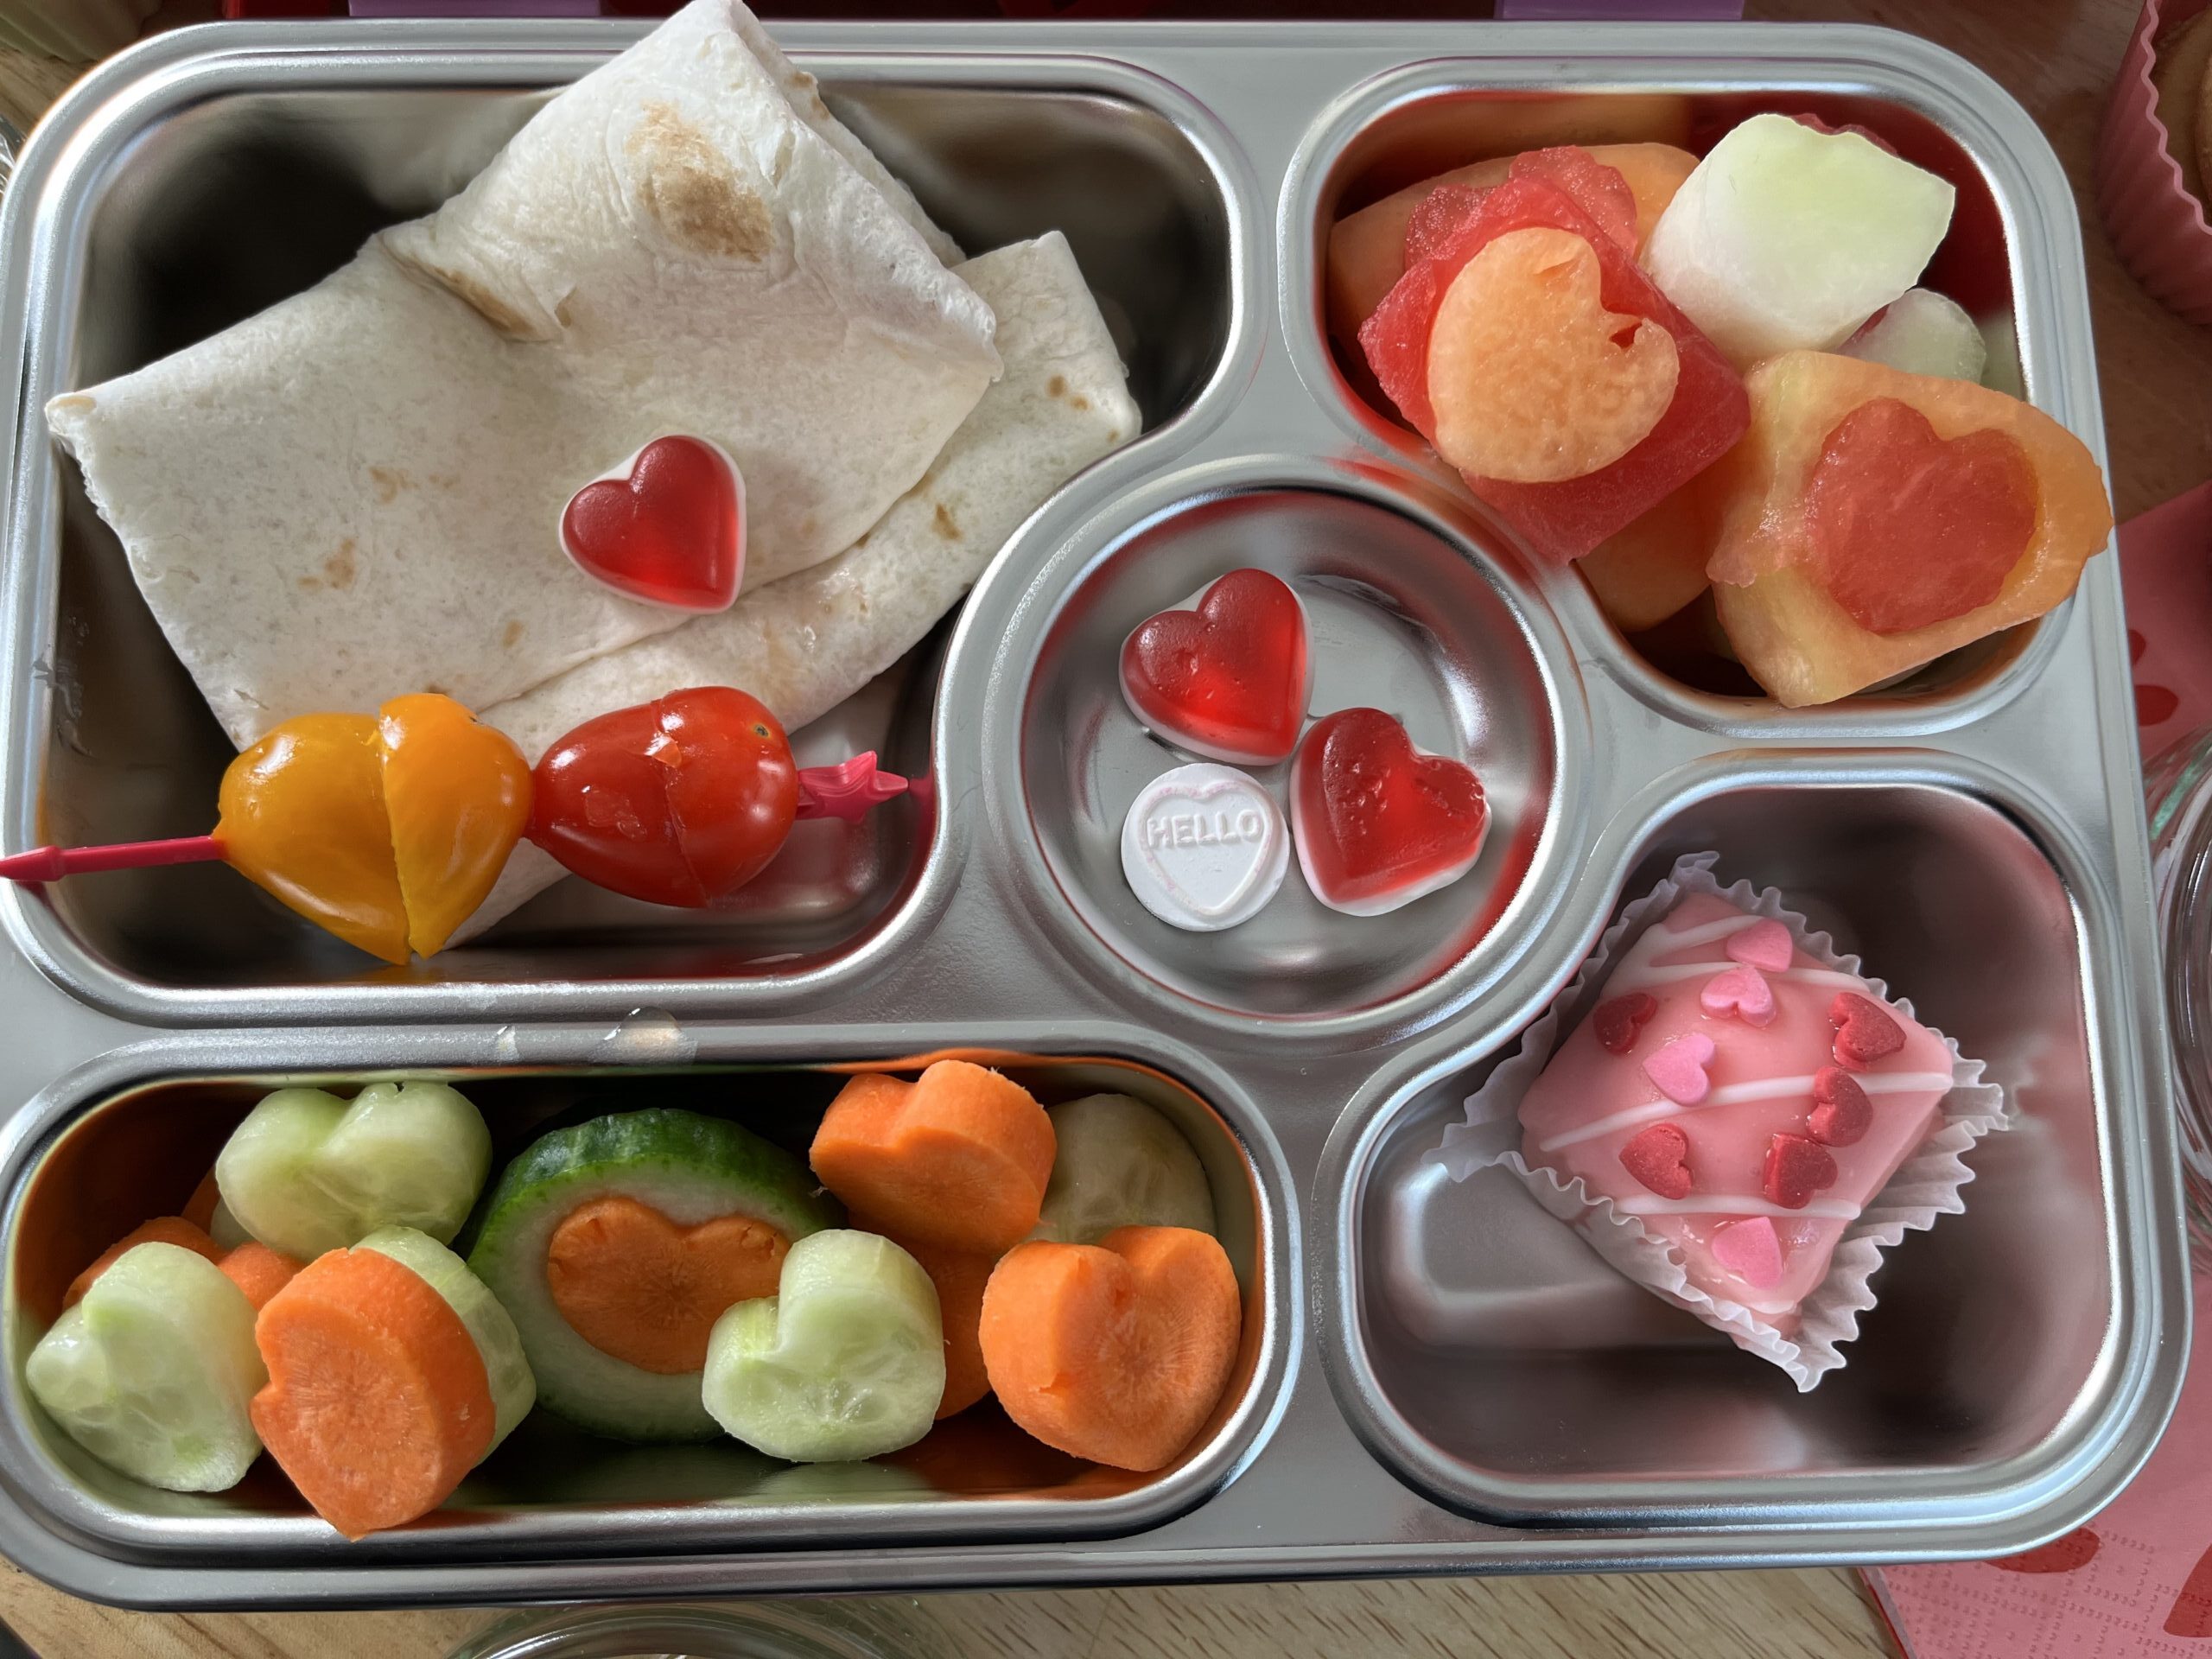 Review: Yumbox Original Bento Box Lunchbox